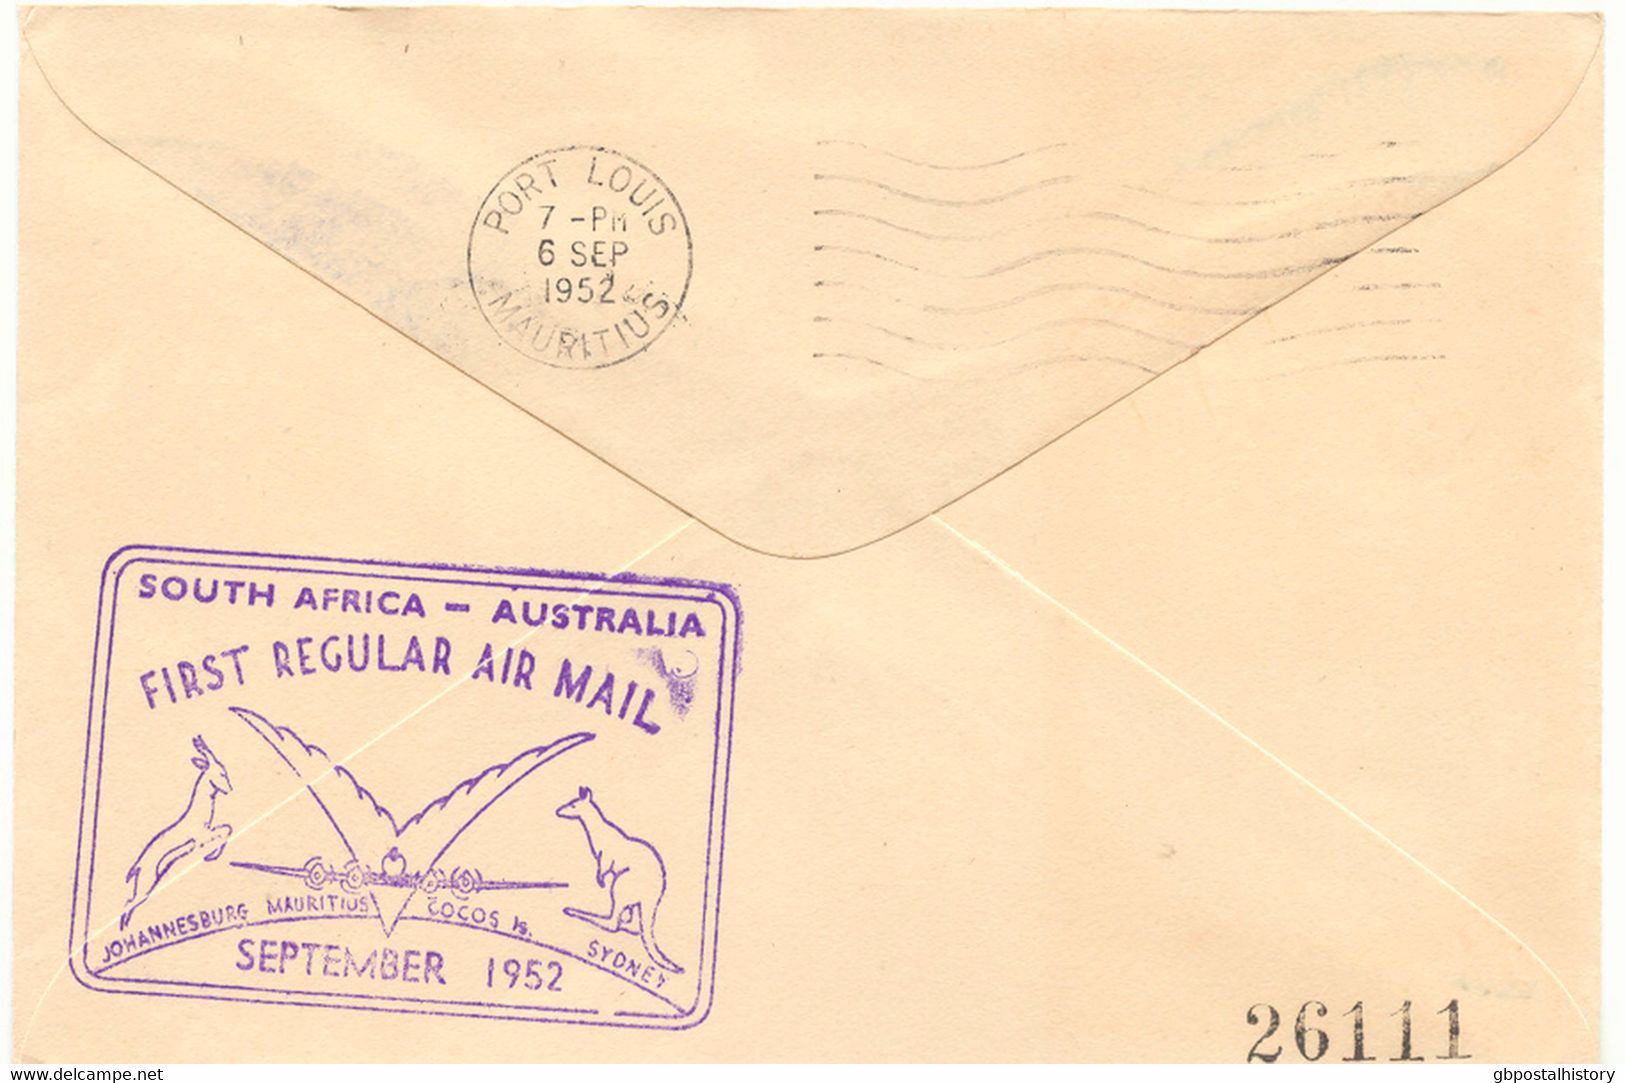 SÜDAFRIKA 1952 Mischfrankatur A. 3 Selt. Kab.-Erstflüge Der Qantas Empire Airways, Teilstrecken "JOHANNESBURG - COCOS IS - Posta Aerea